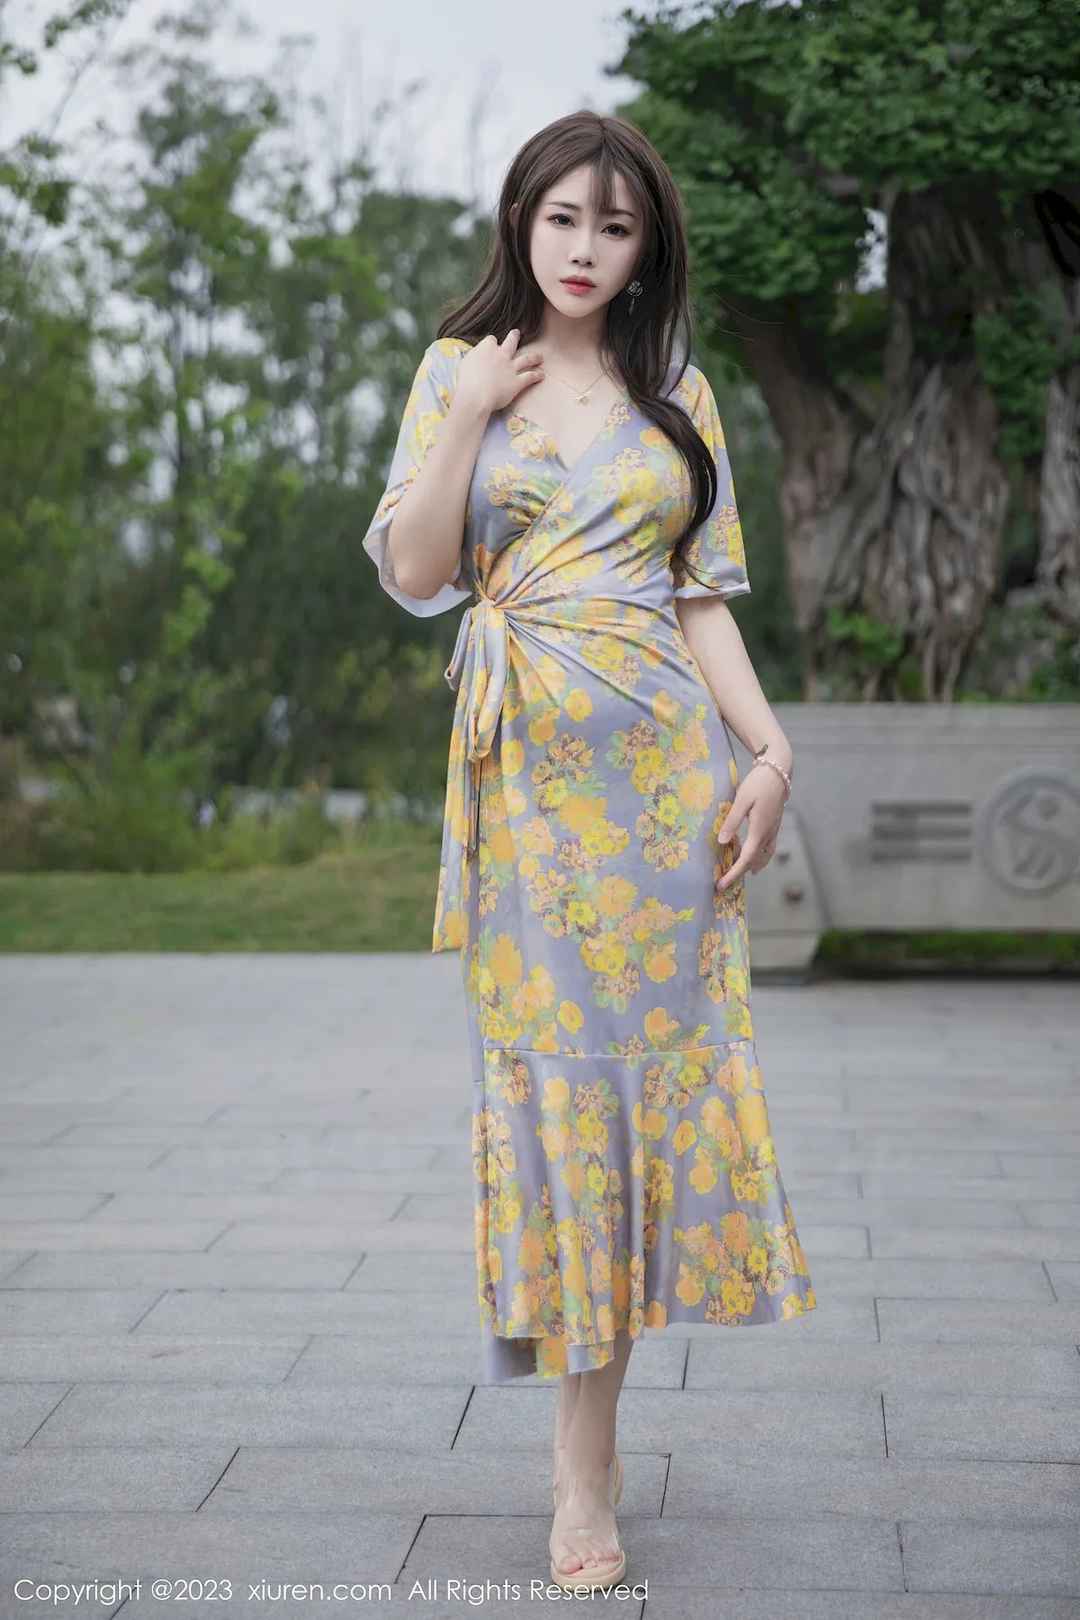 严利娅Yuliya轻盈动人黄灰色睡裙高挑身材性感写真